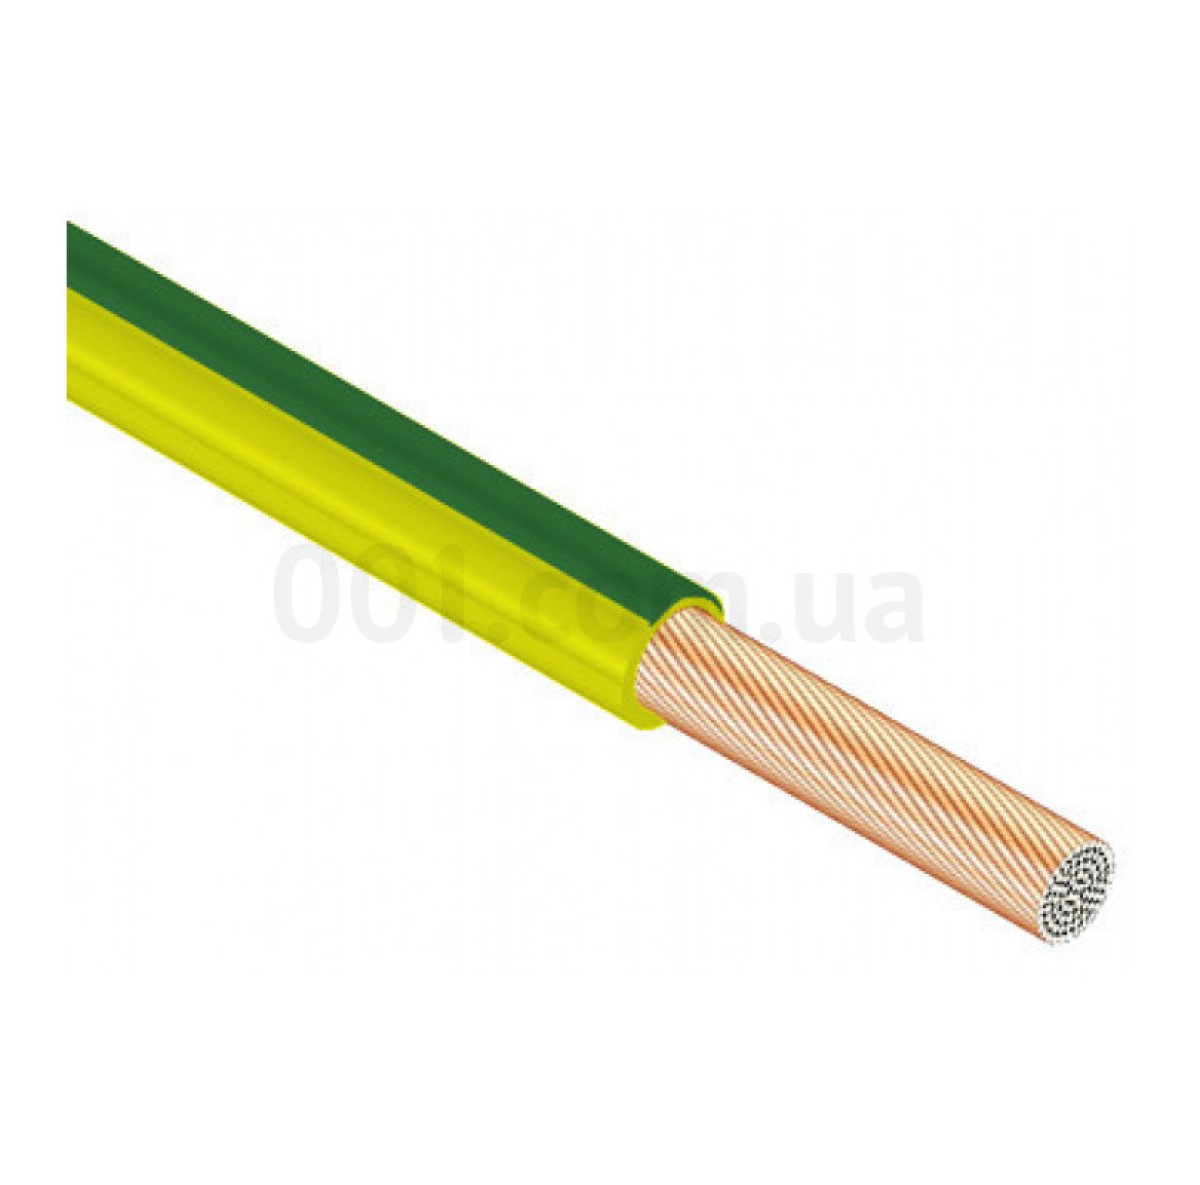 Провод установочный ПВ-3 16 мм² желто-зеленый с медными жилами (ГОСТ), ЗЗЦМ 98_97.jpg